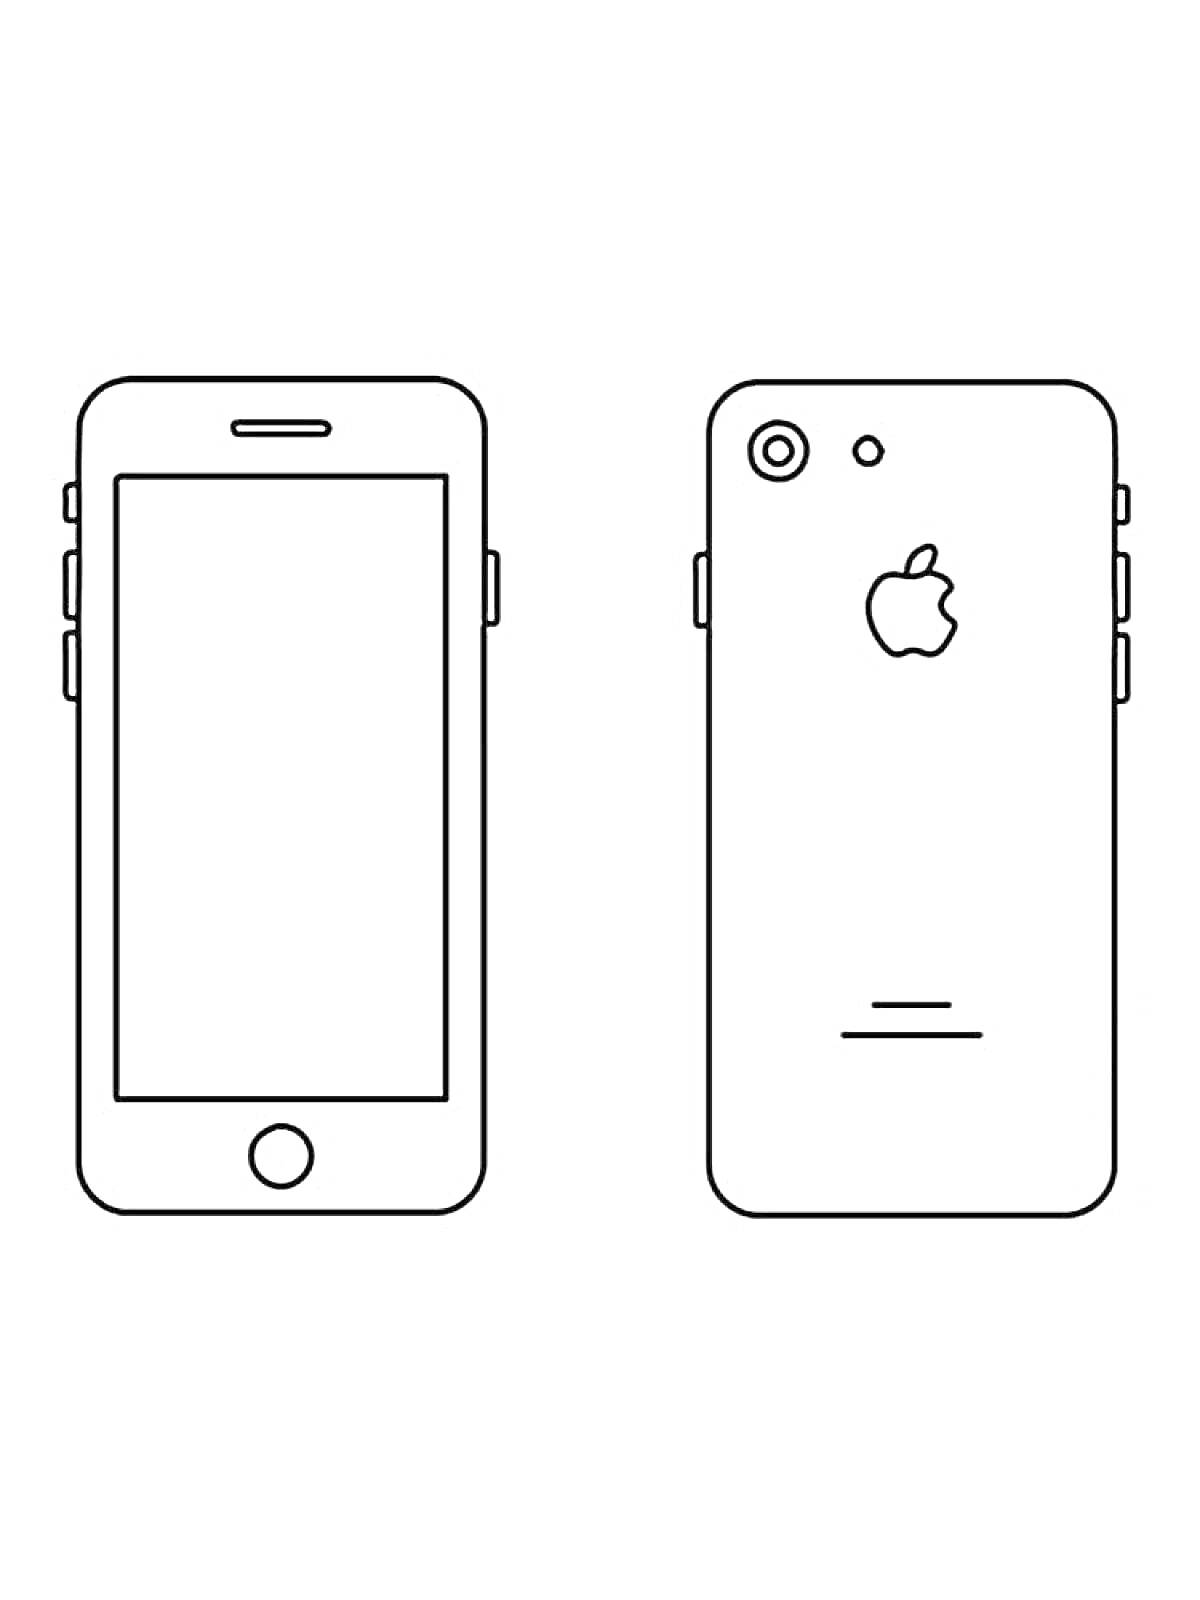 Раскраска iPhone 14 с передней и задней панелью, кнопками управления, логотипом яблока и линзами камеры